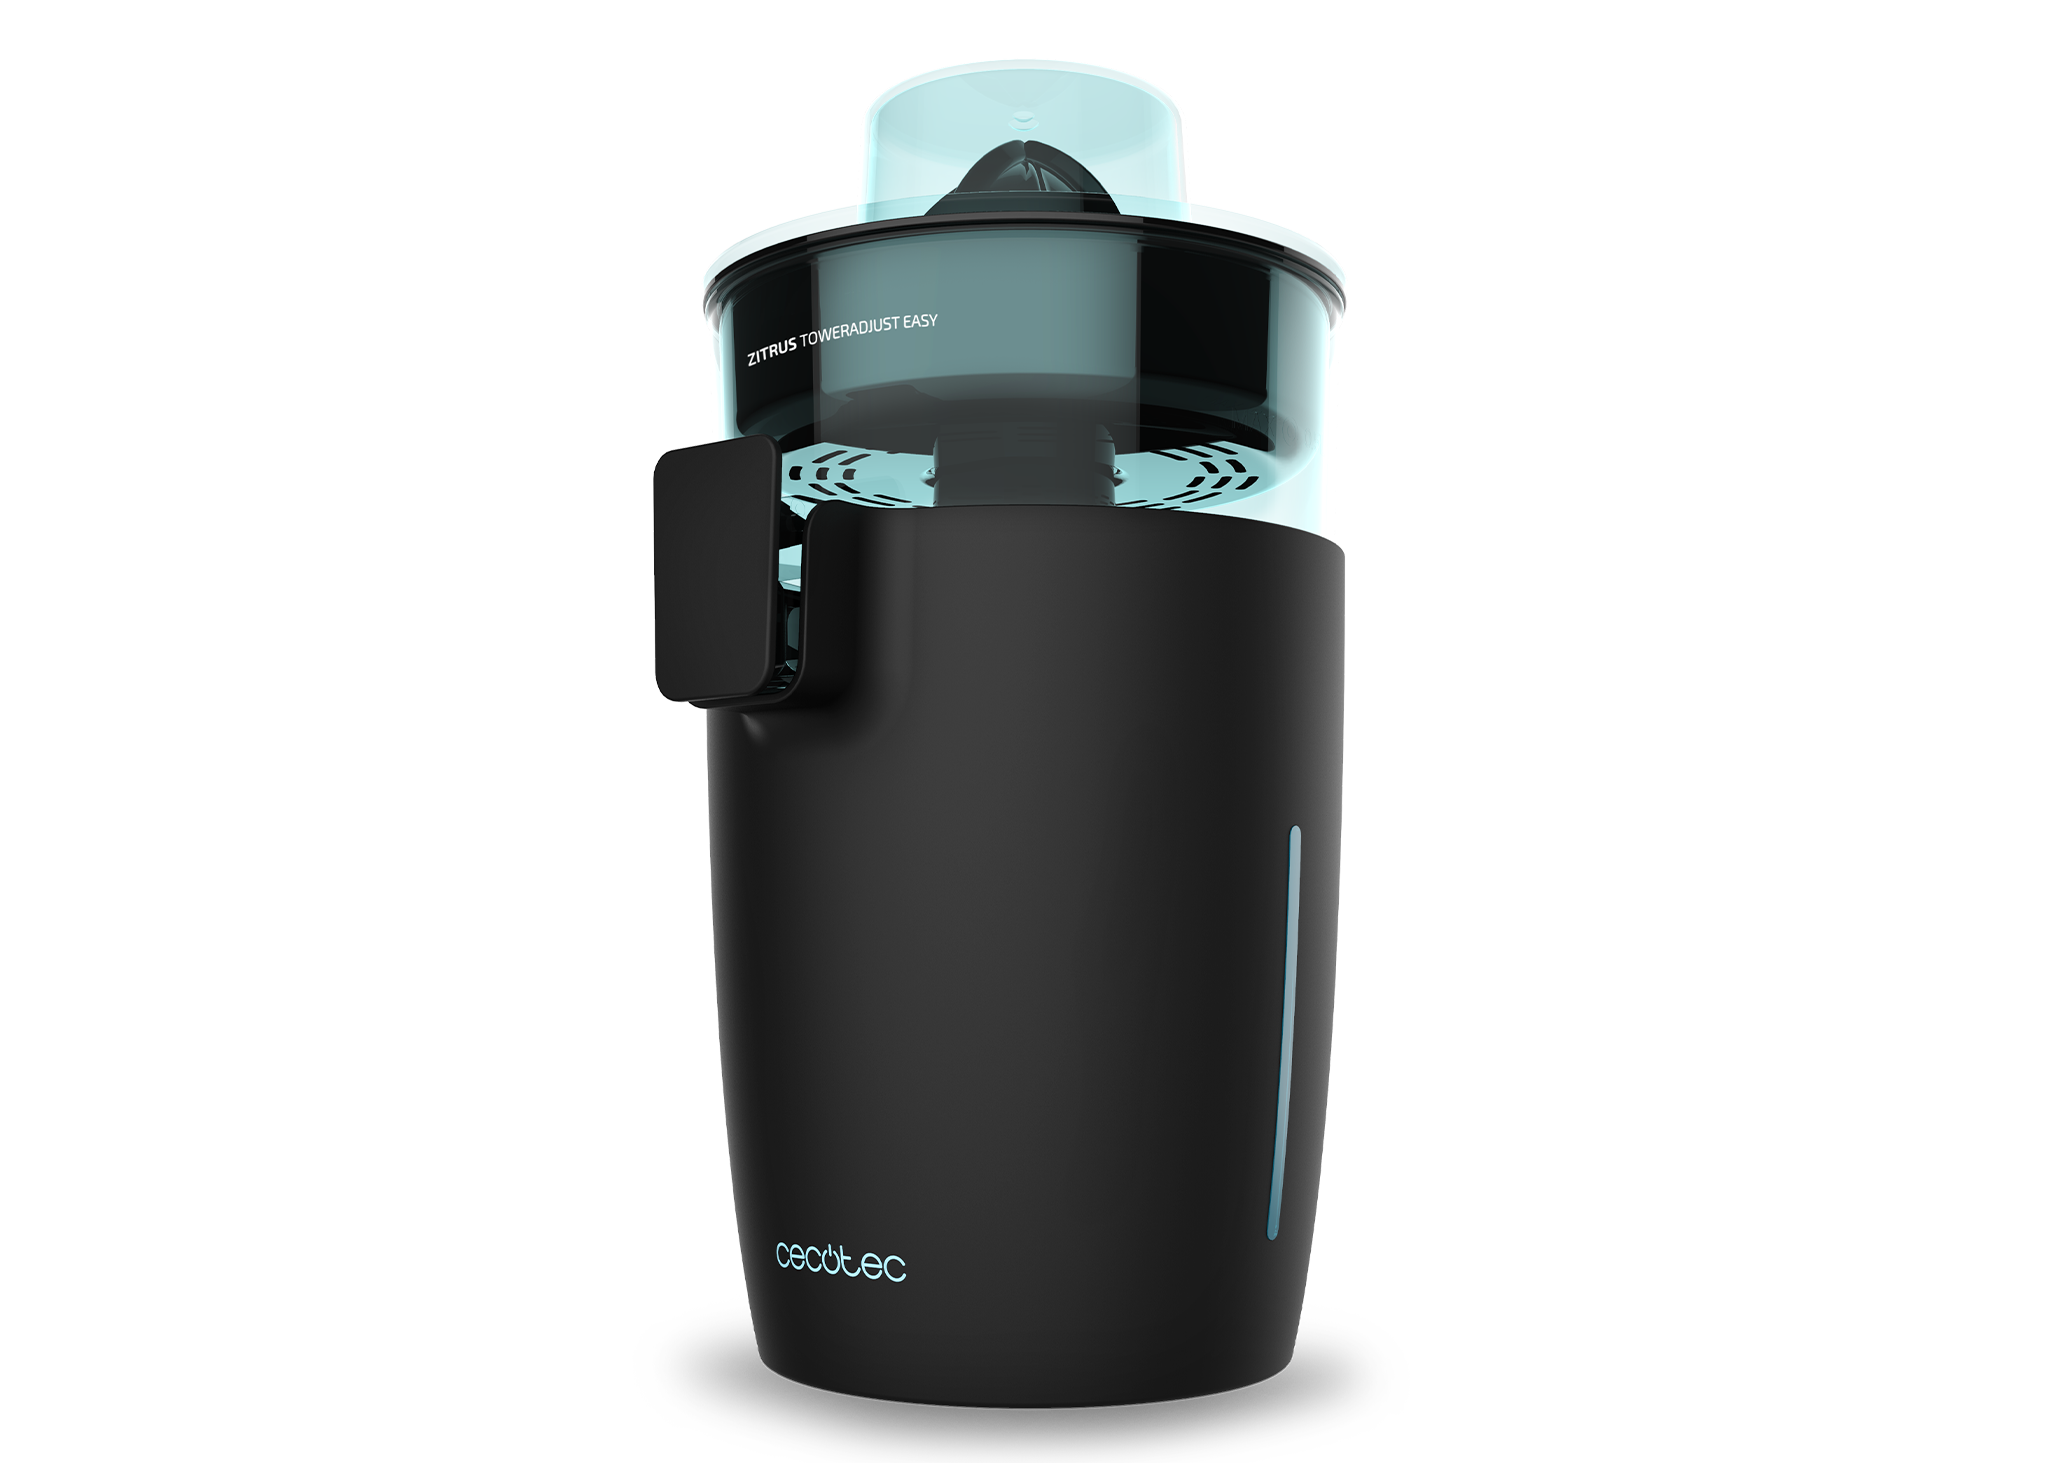 Elektrische Zitruspresse Zitrus TowerAdjust Easy. Leistung 350 W, Zellstoff-Filterregler, 2 abnehmbare Kegel unterschiedlicher Größe, BPA-freie Trommel, 0,5 l Fassungsvermögen (schwarz)